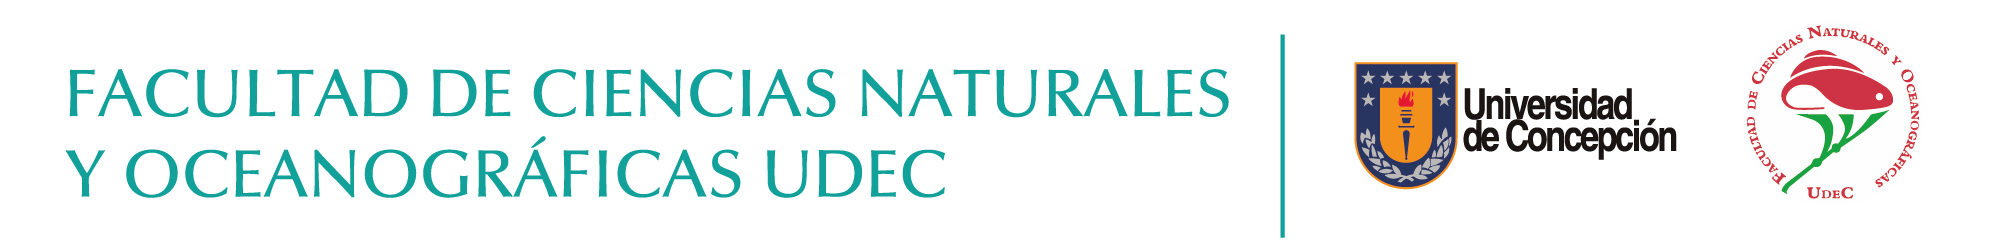 Facultad de Ciencias Naturales y Oceanográficas UdeC Logo